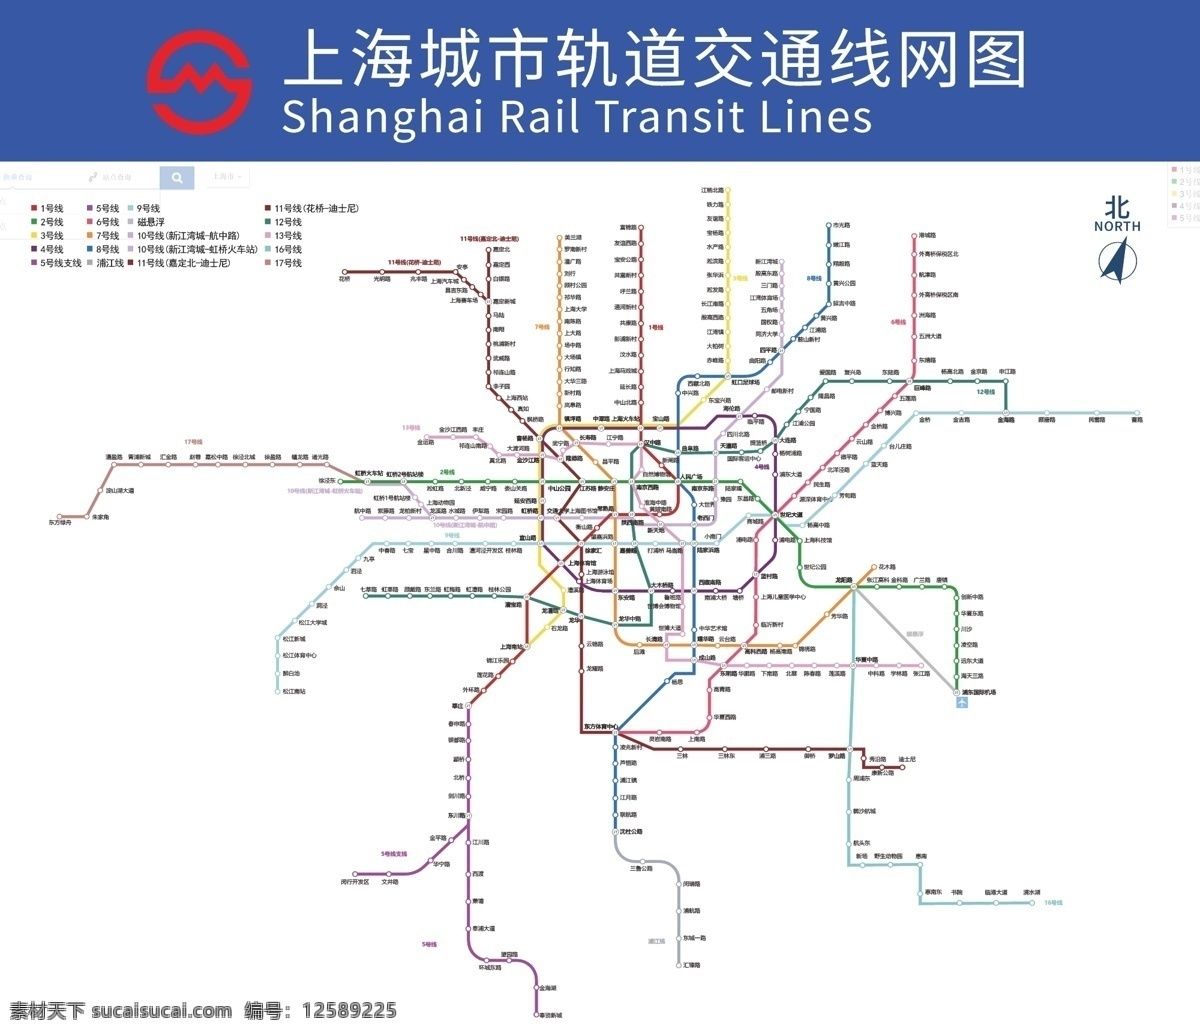 2020 上海 地铁 路线图 2020地铁 2020年 2020上海 上海地铁 上海地铁路线 地铁路线 地铁路线图 城市 城市轨道 交通 交通网线 交通网线图 2020最新